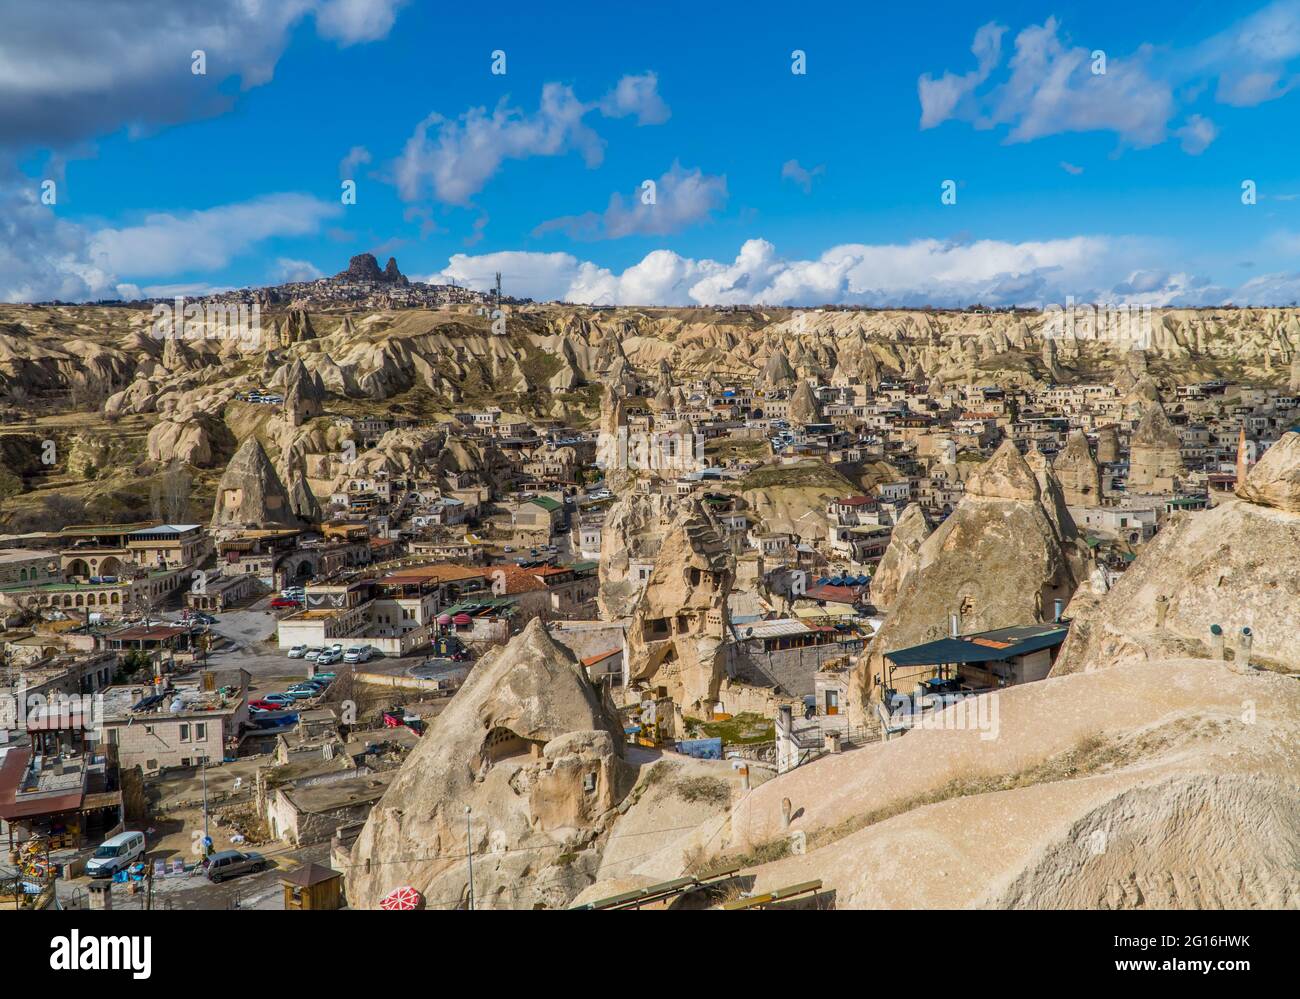 Göreme, Turchia - 20 marzo 2020 - bella vista panoramica della città di Göreme in Cappadocia, Turchia con camini fata, case, e roccia unica f Foto Stock